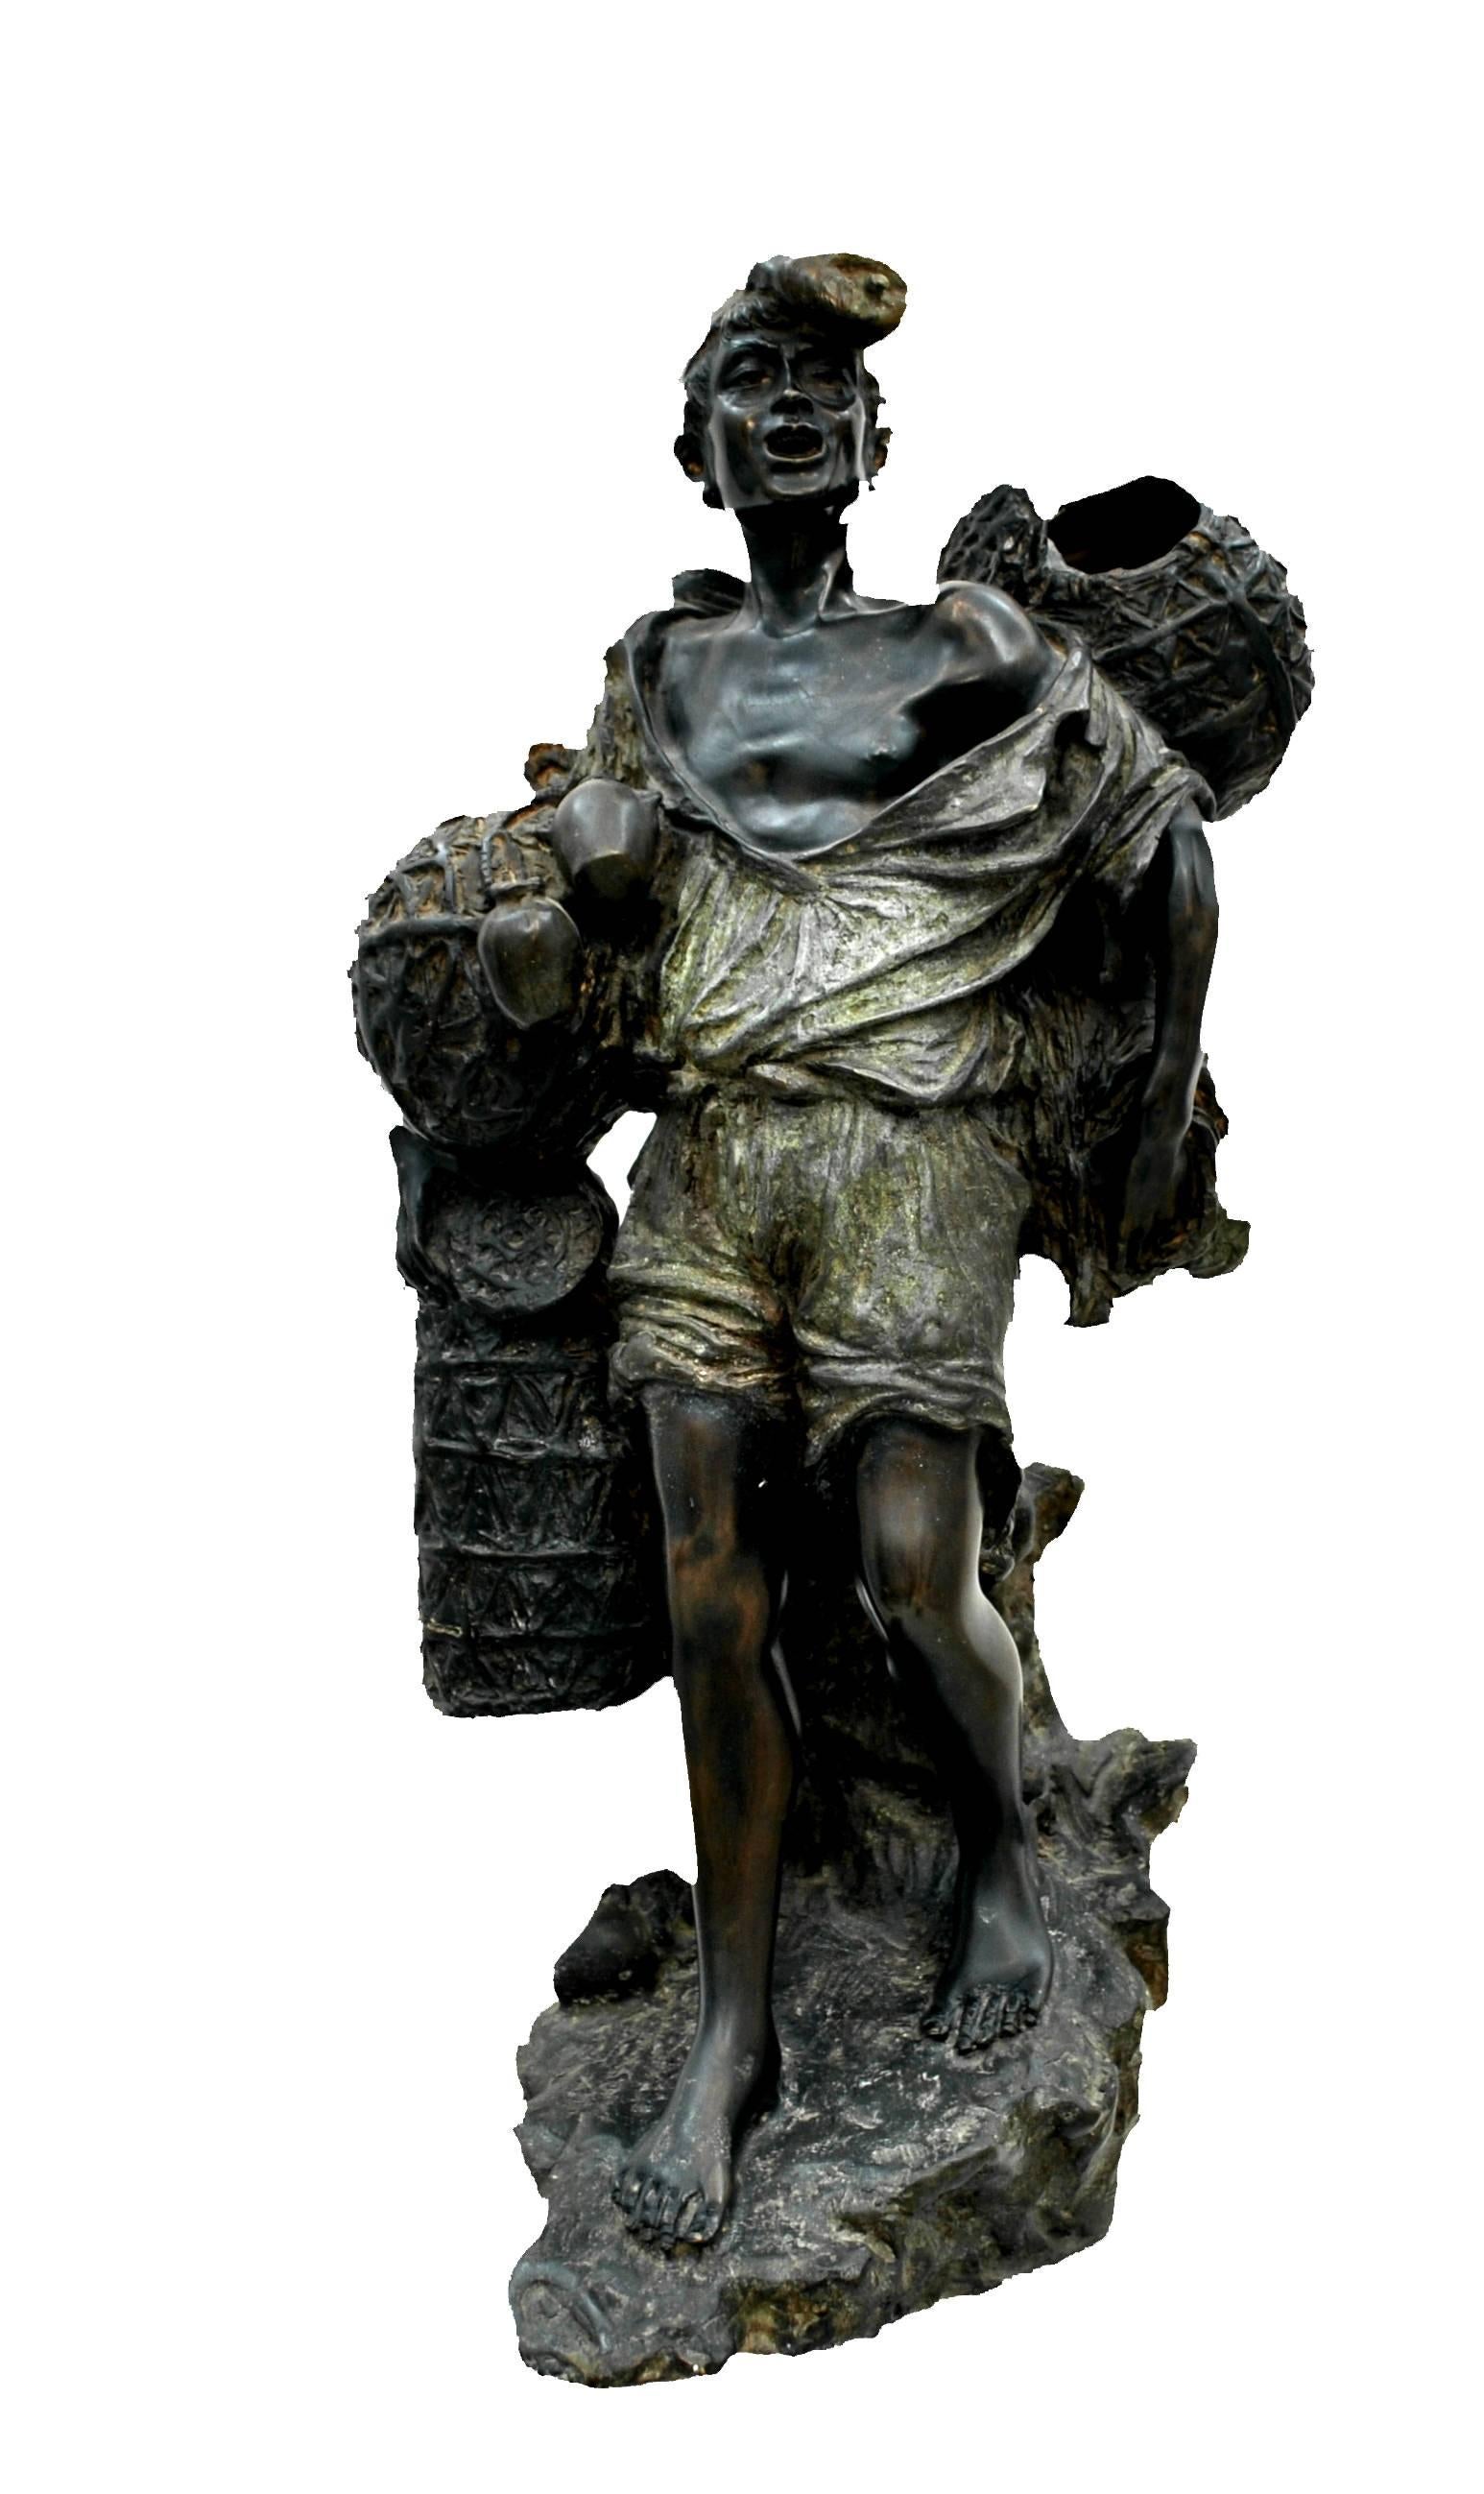 Vincenzo Cinque Figurative Sculpture - PESCATORE CON NASSE - FISHERMAN WITH POT